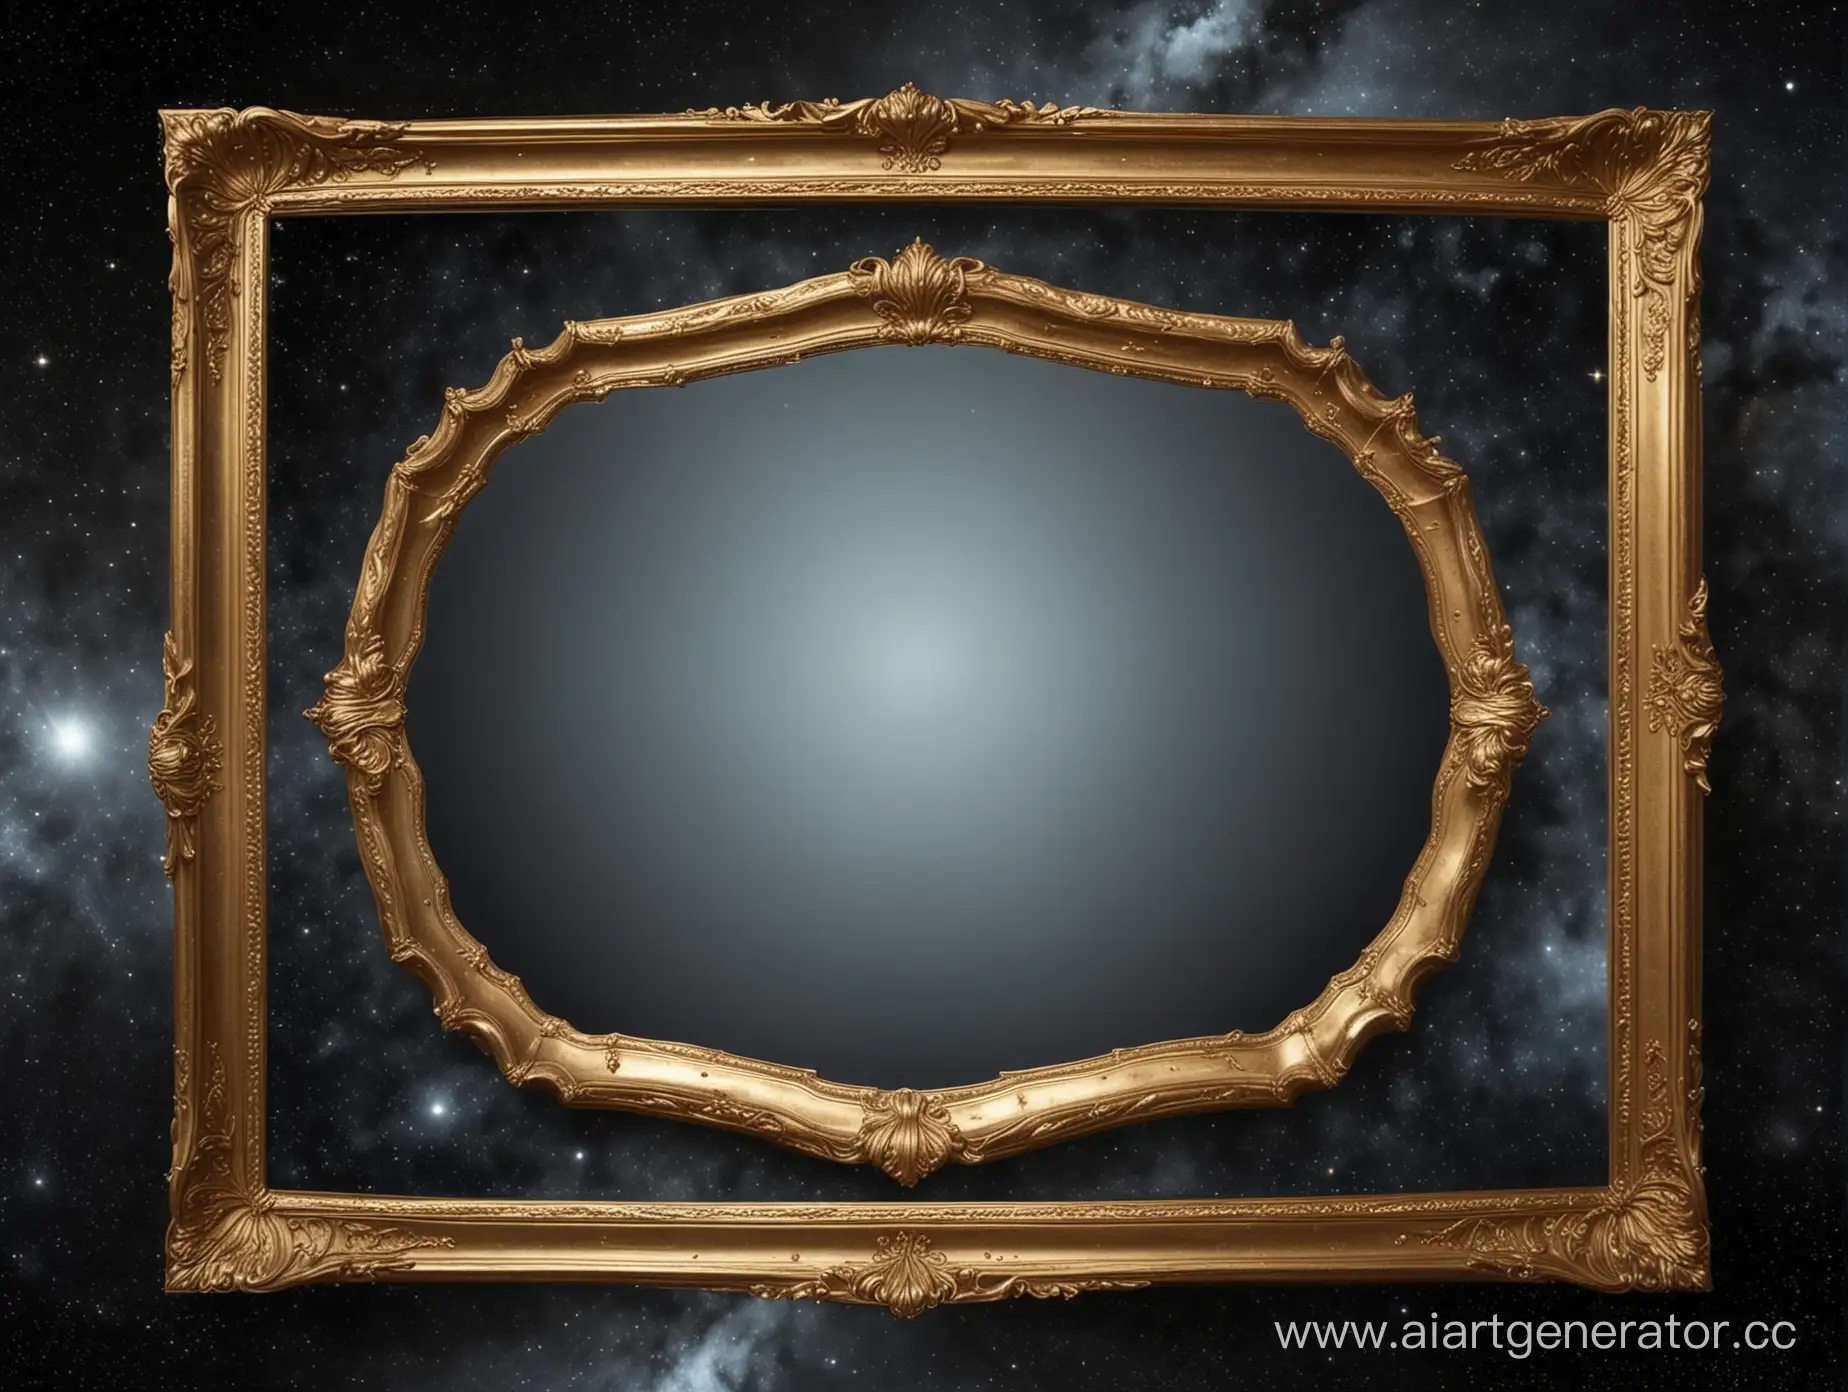 Фон для текста, зеркало с золотой рамкой в космосе, оно расположено по центру кадра и видно полностью